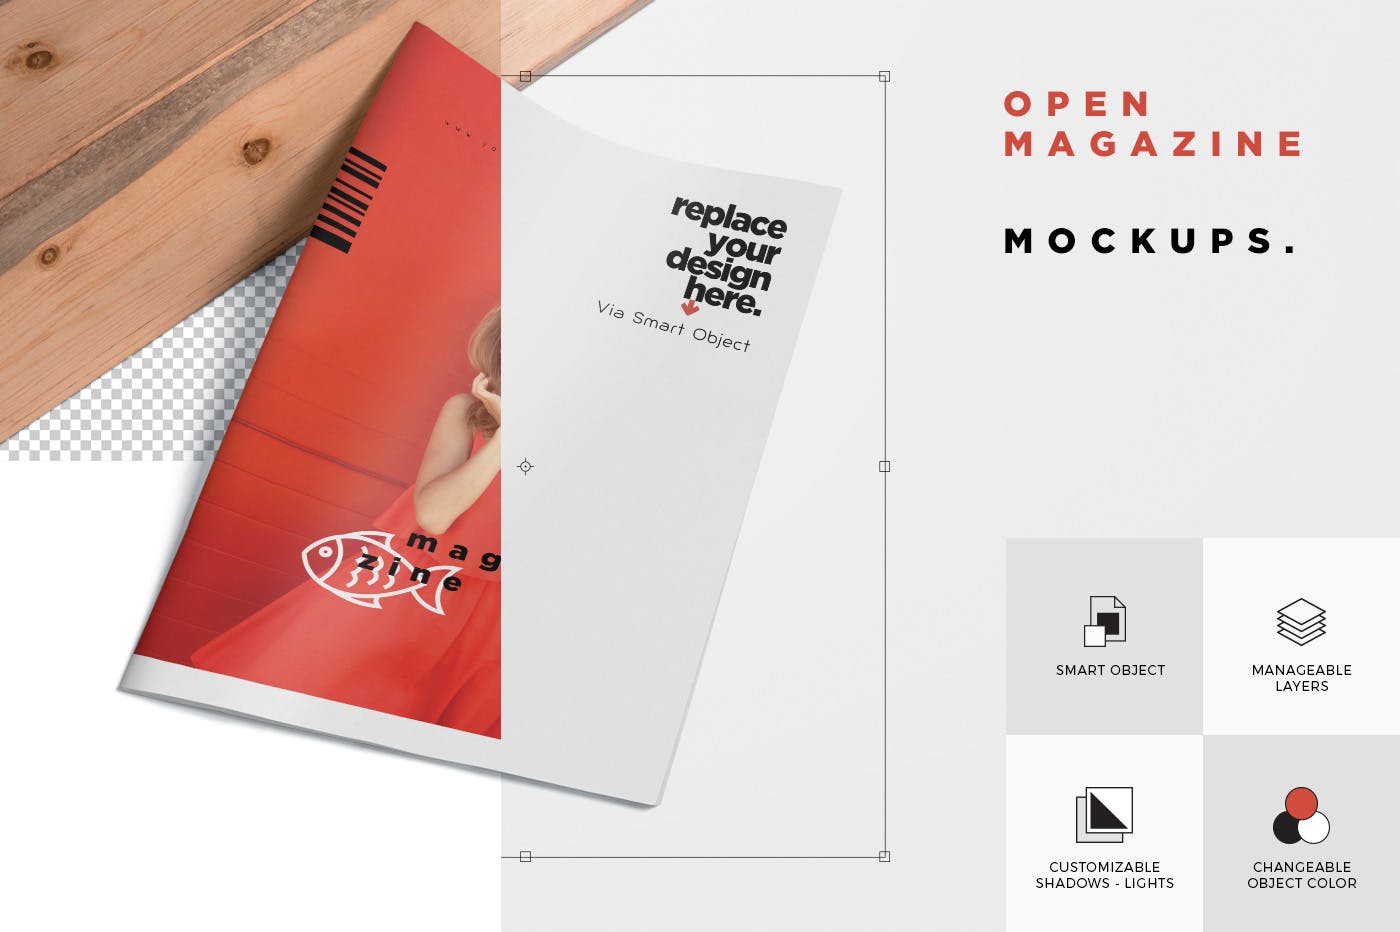 杂志广告图片设计印刷效果图样机 Open Magazine Mockups for Ad Designs插图(6)